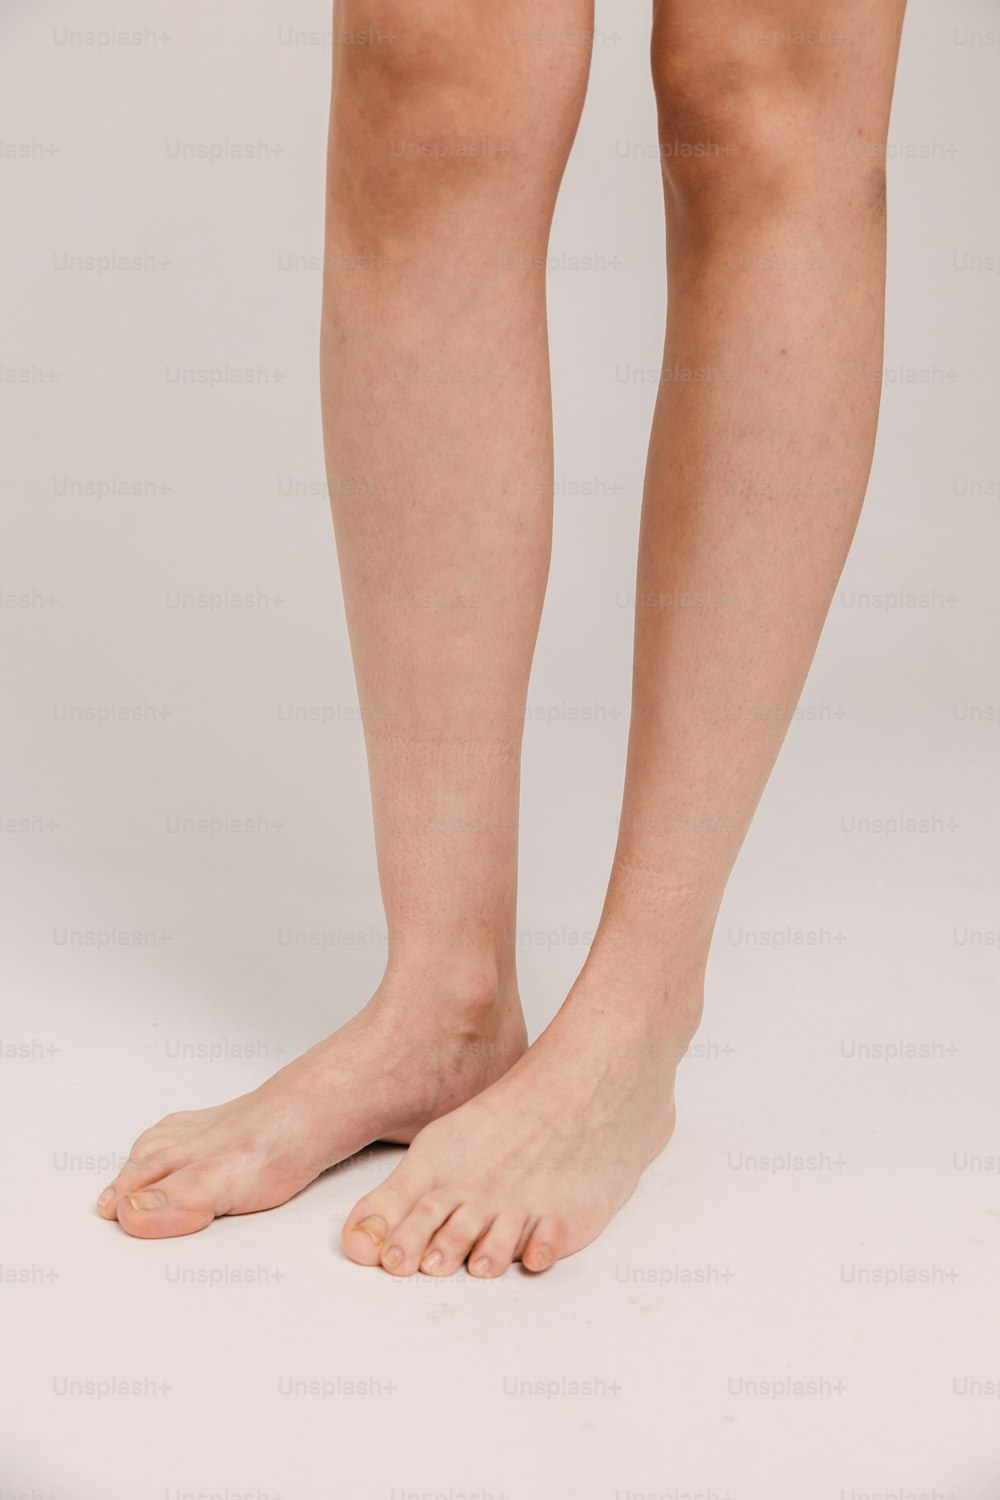 女性の素足と脚が写っている